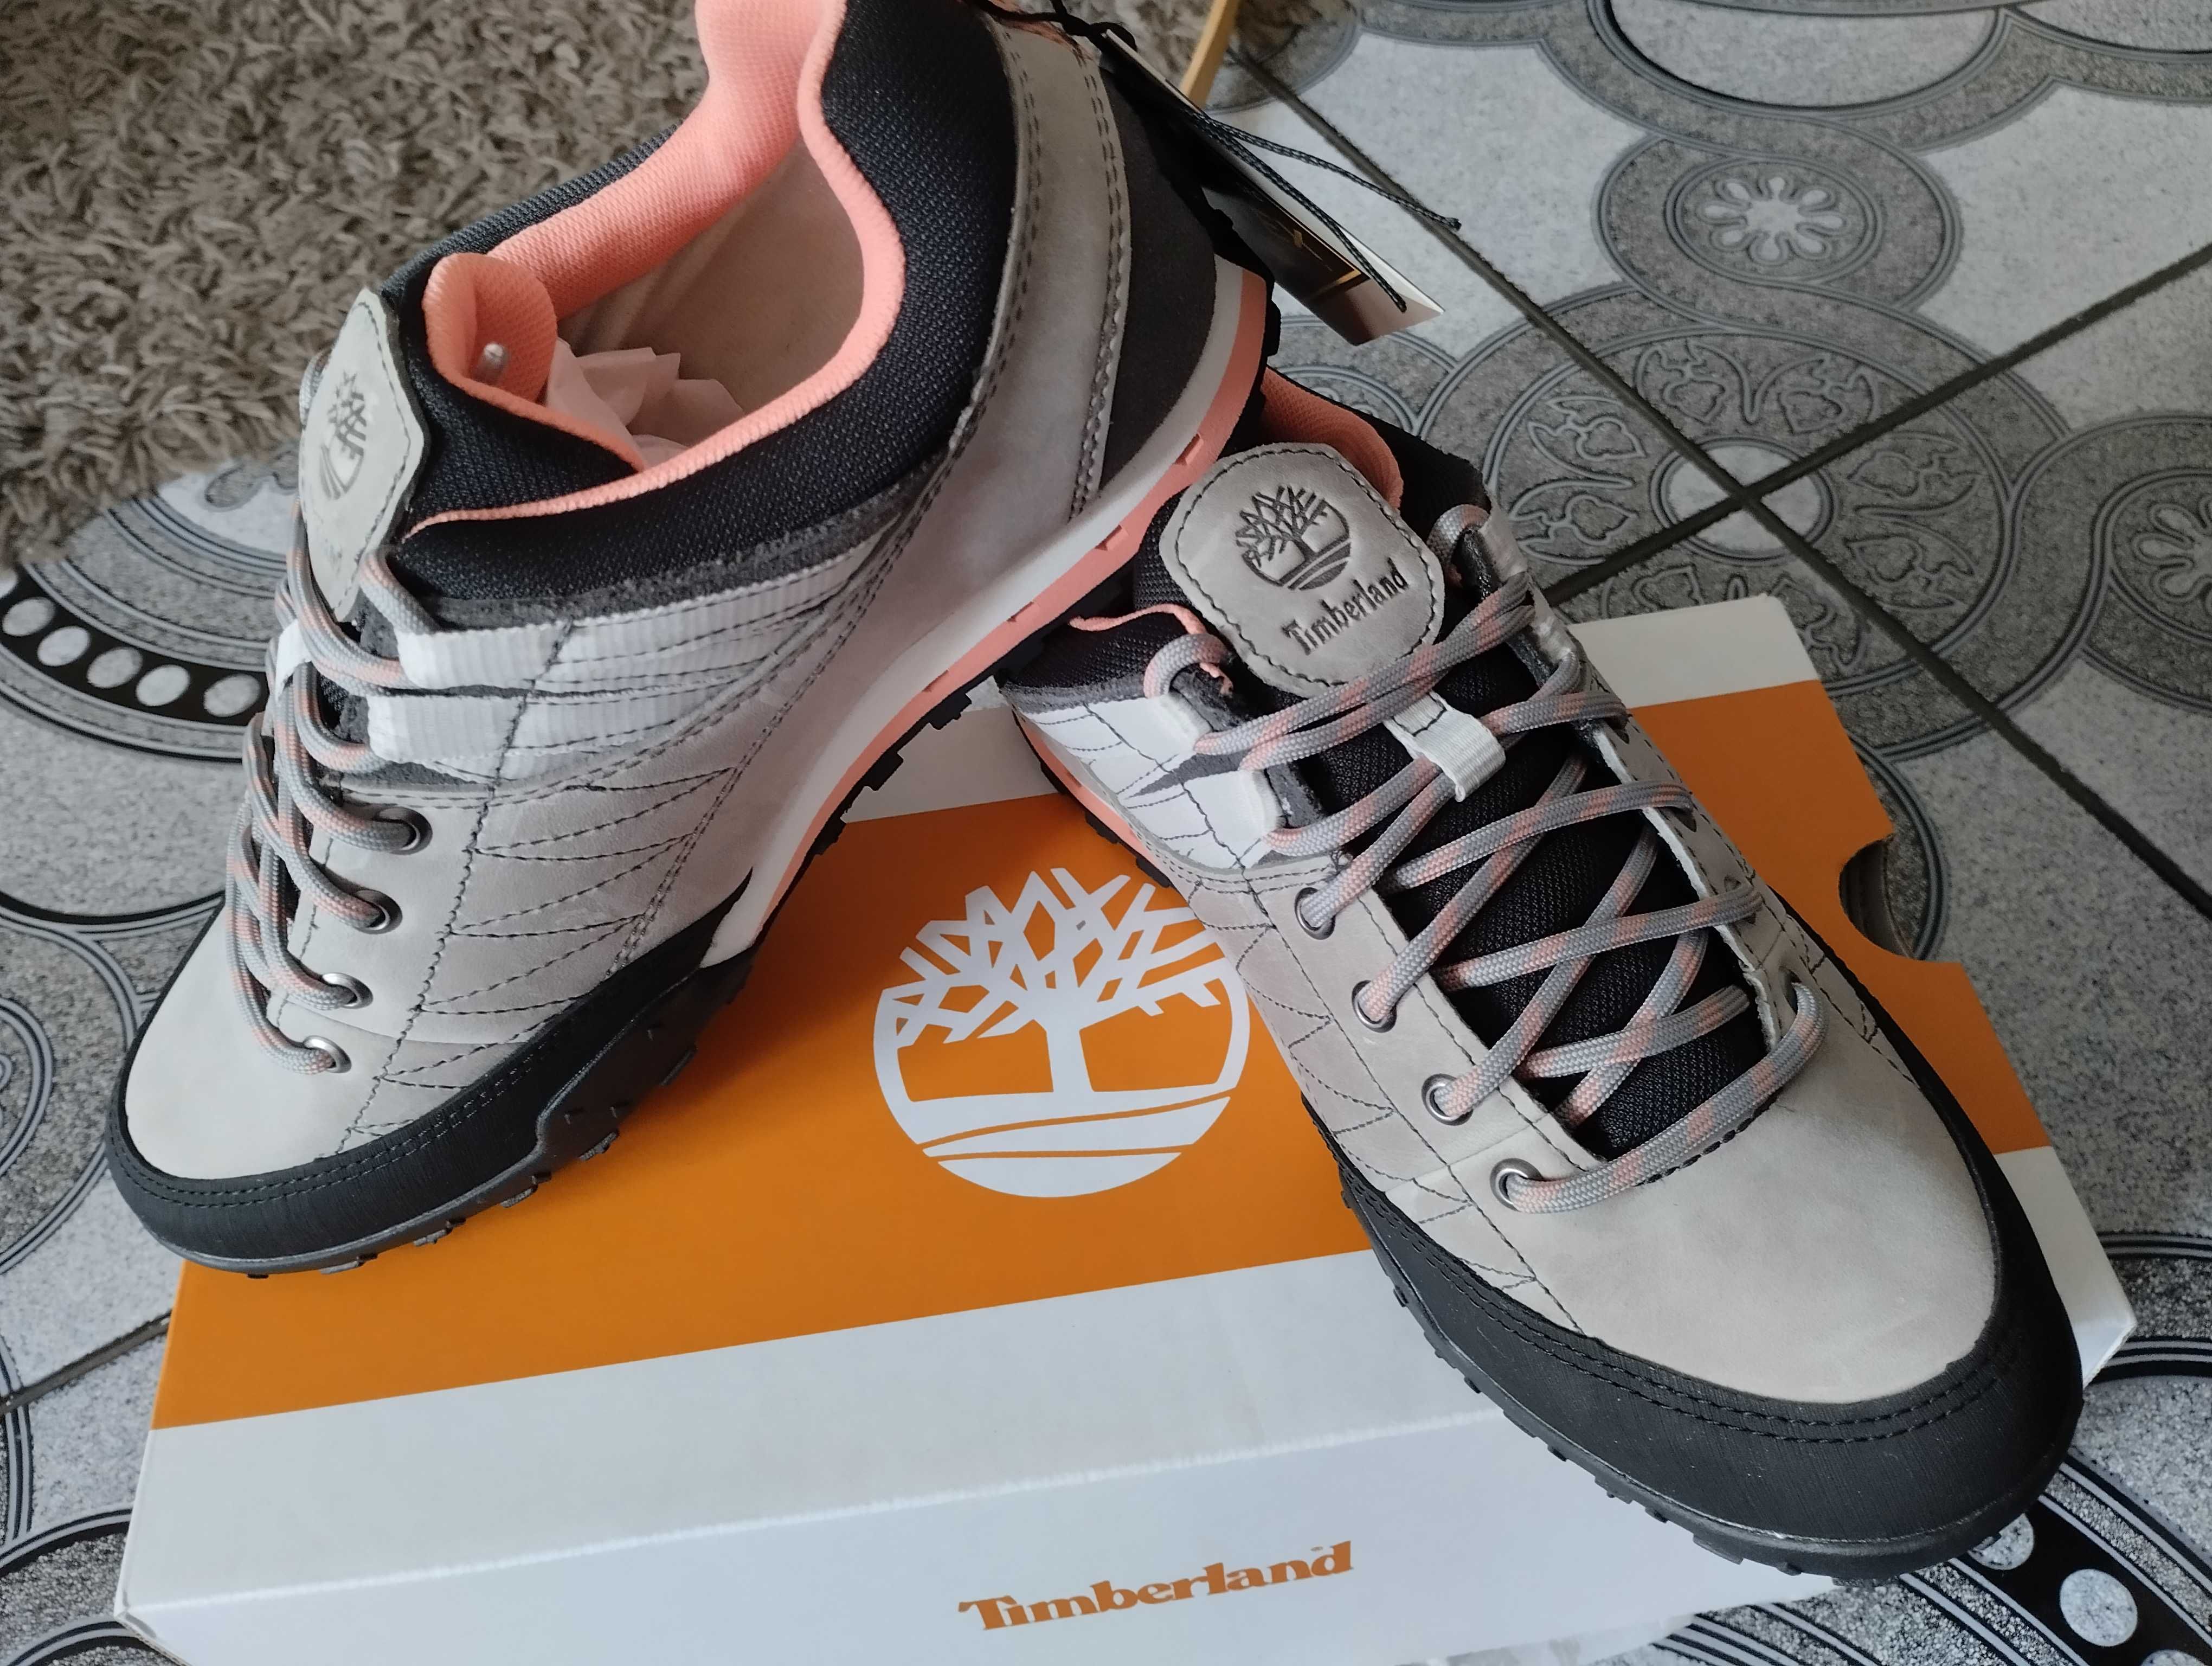 Timberland нови дамски спортни обувки. С кутия.Goretex. N37 и N37.5.